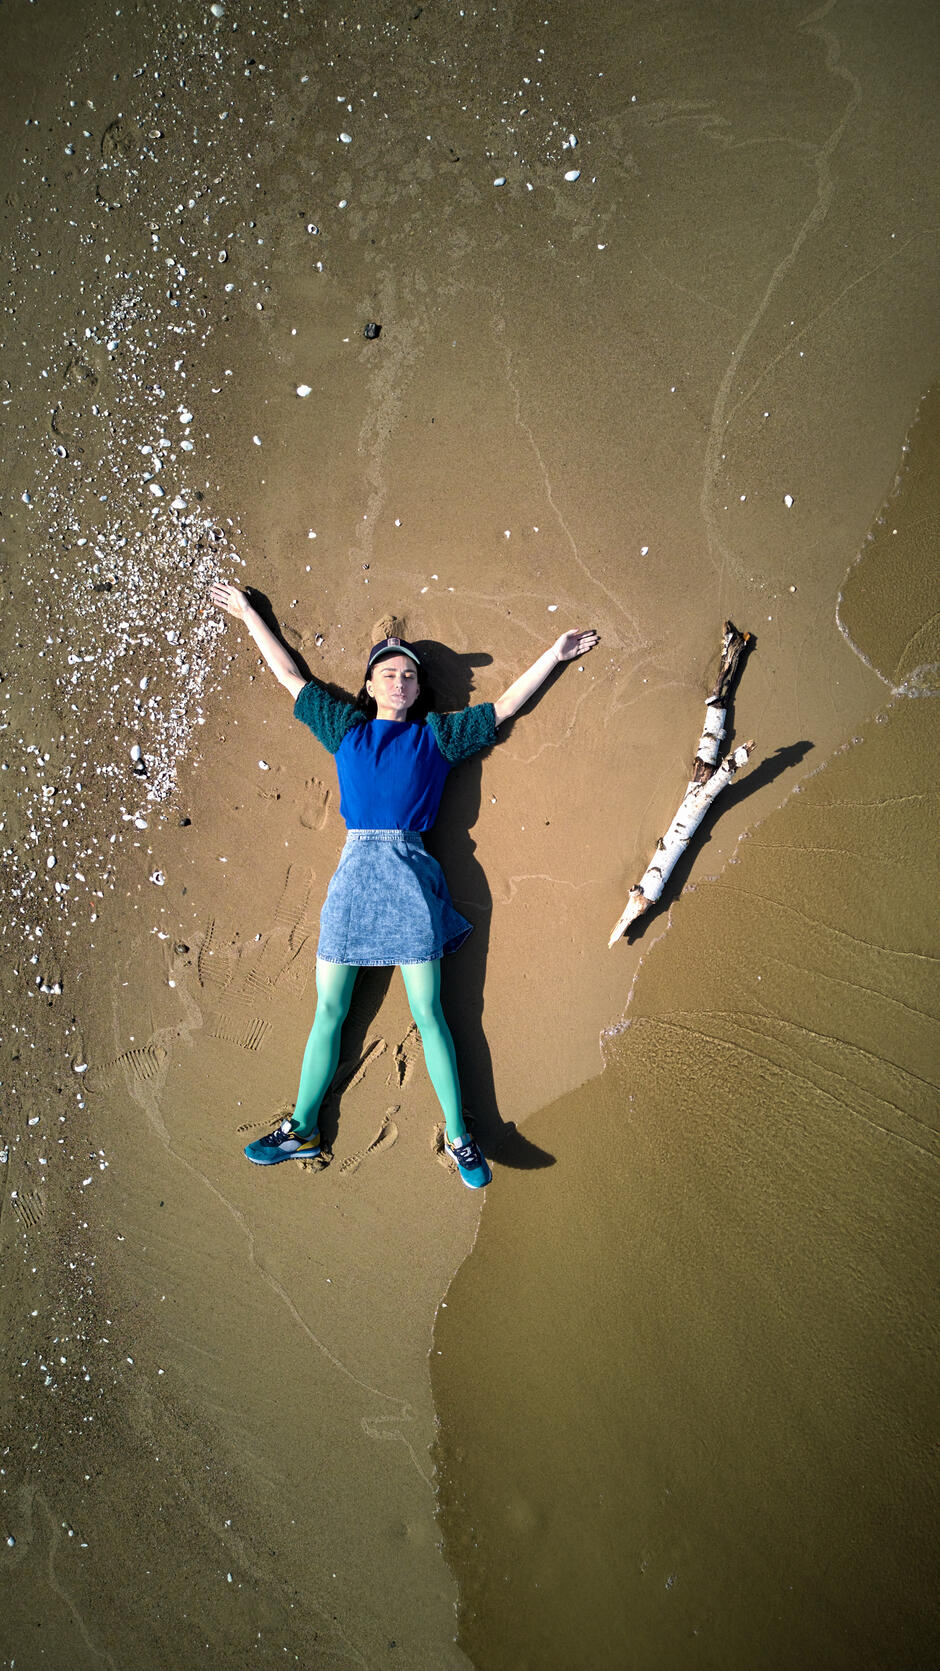 aktorka leży na piasku przy brzegu morza, obok niej duży patyk, ma ręce uniesione do góry, zdjęcie z lotu ptaka